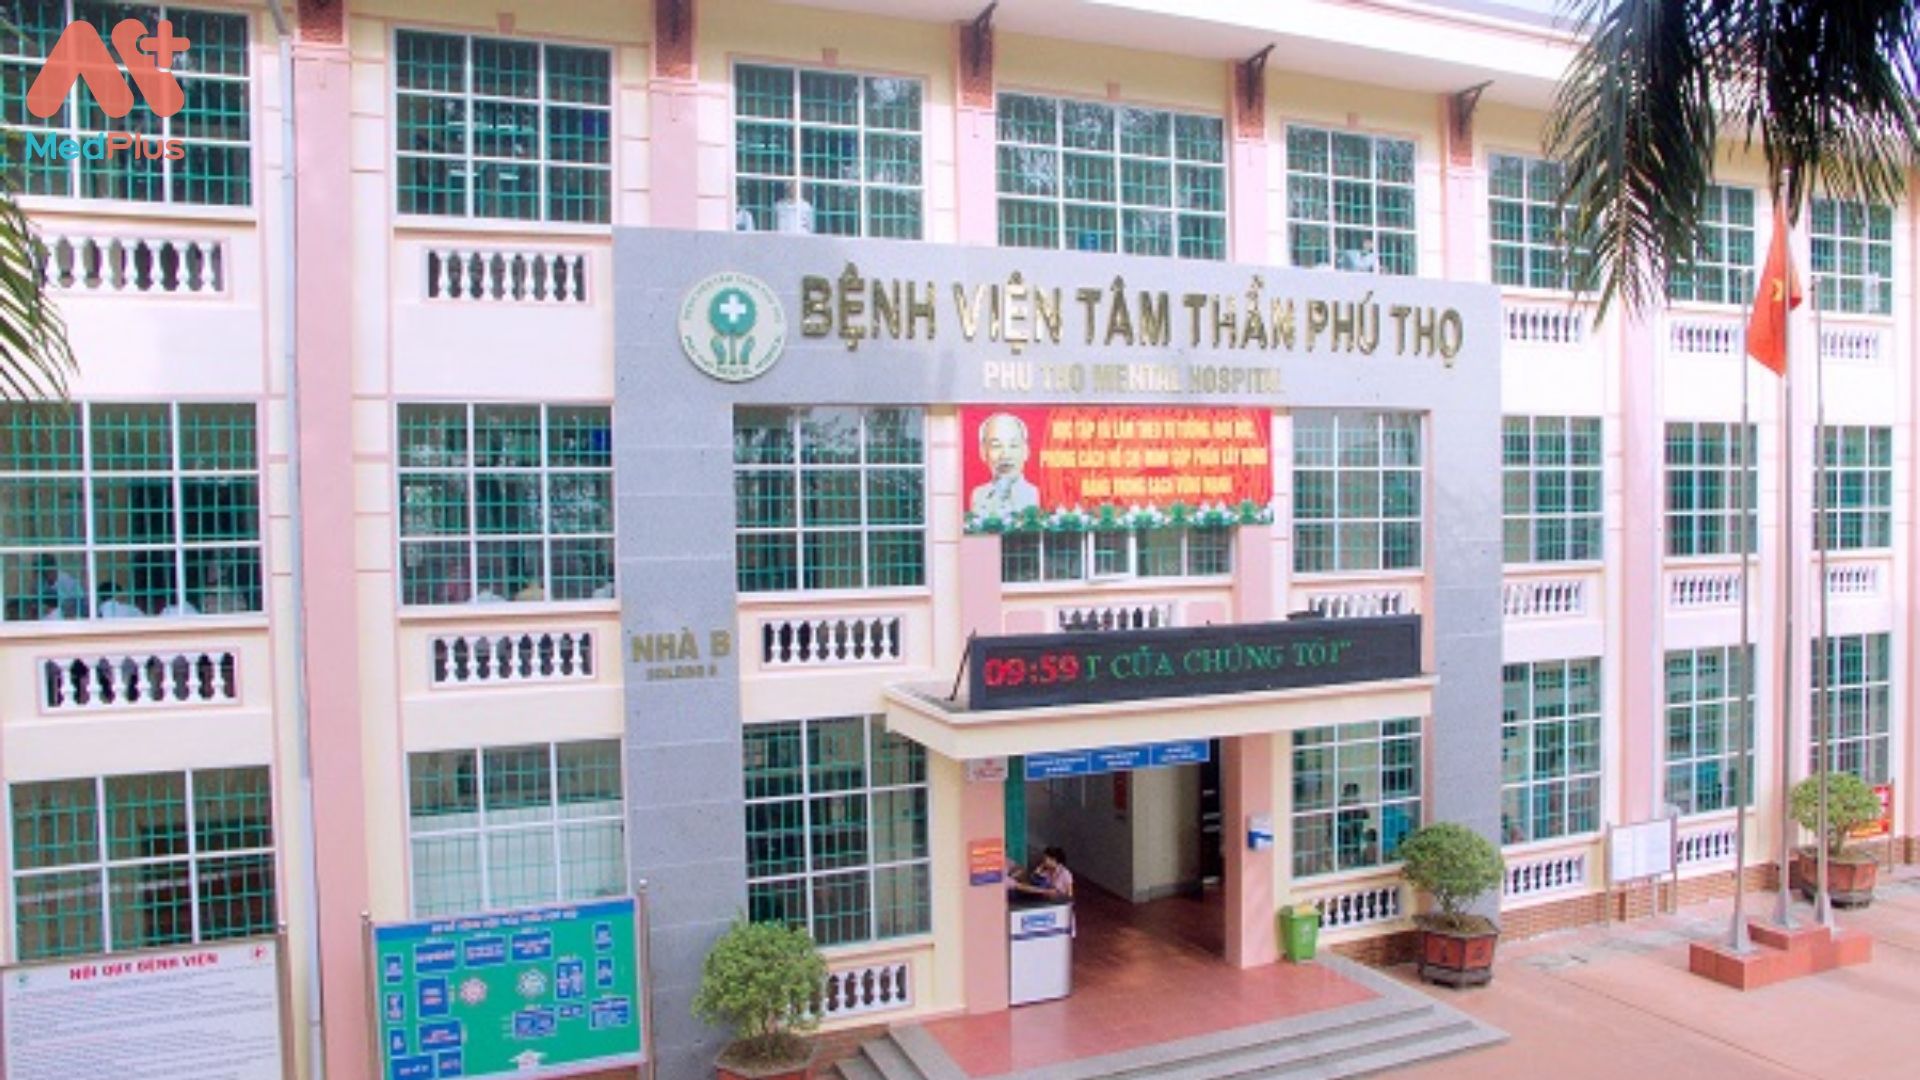 Bệnh viện Tâm Thần Phú Thọ